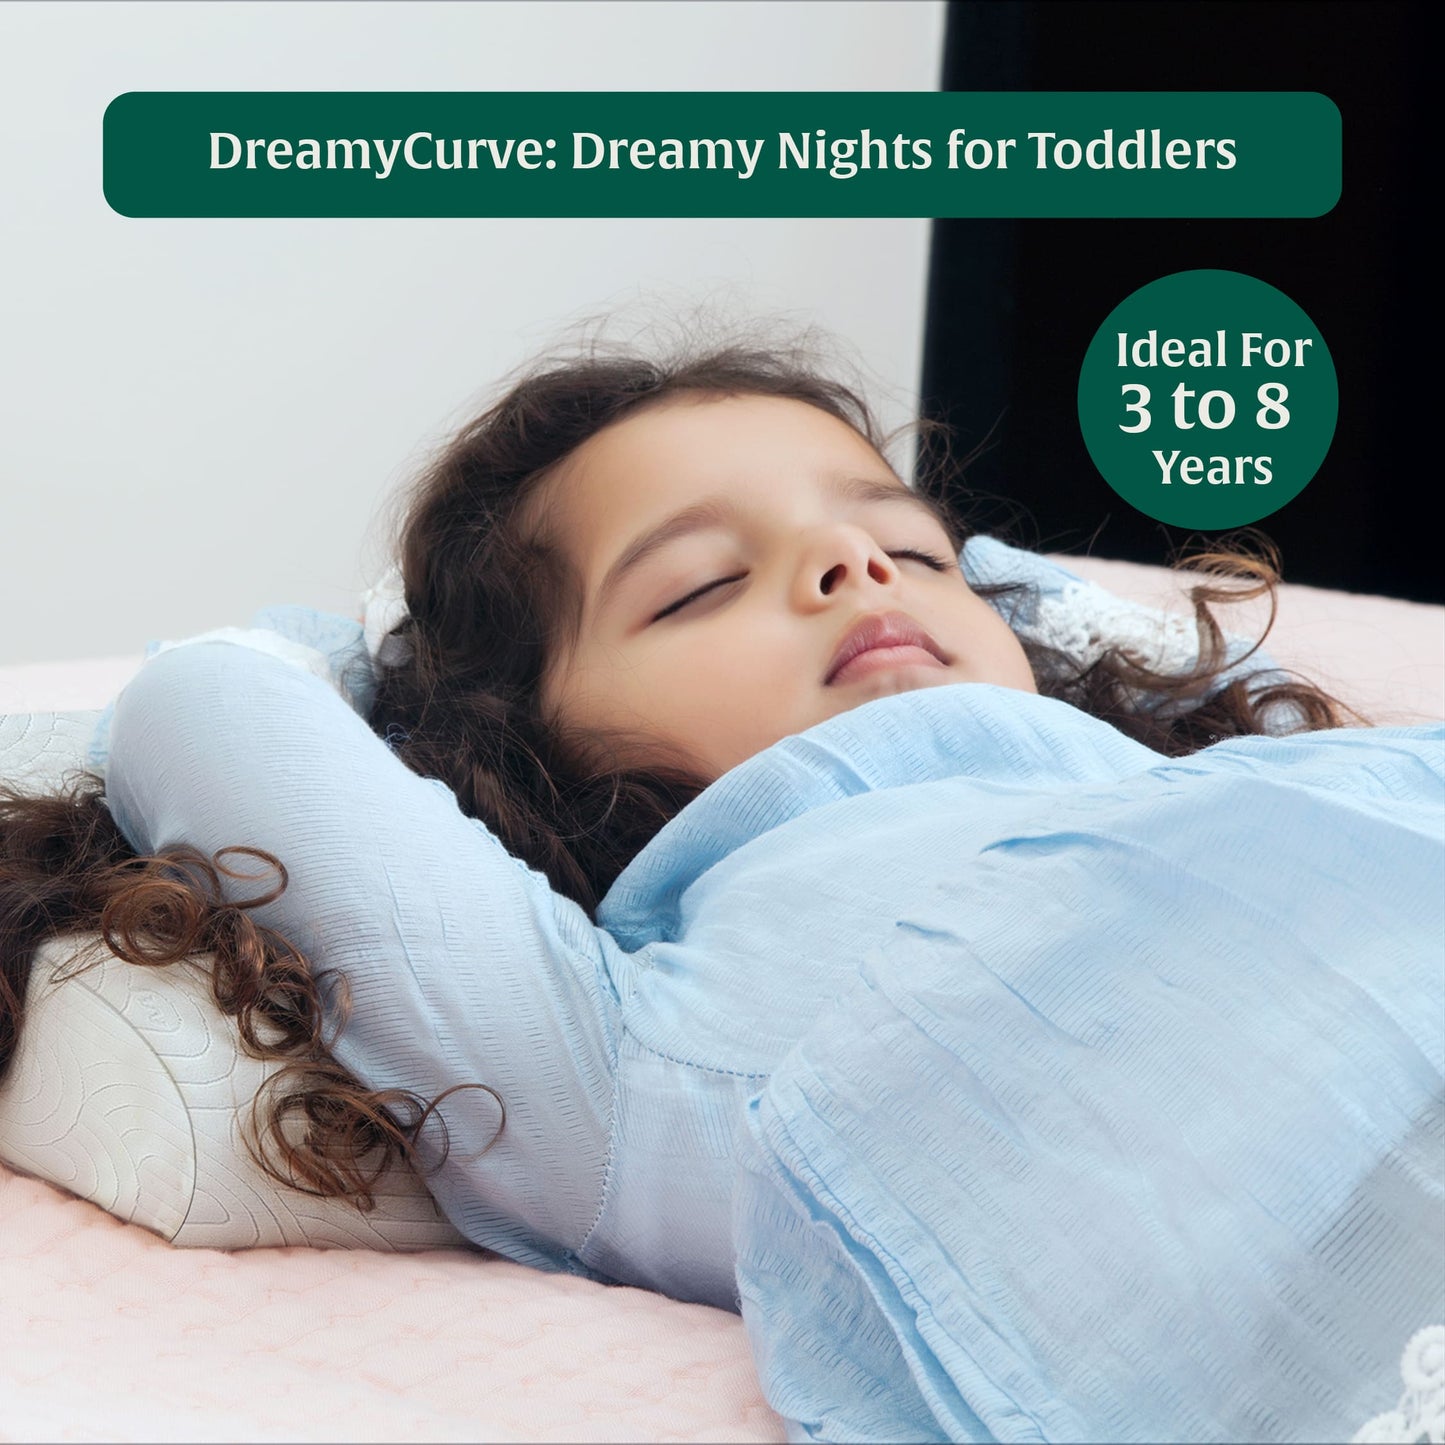 Little Dreamers Dreamy Curve Pillow